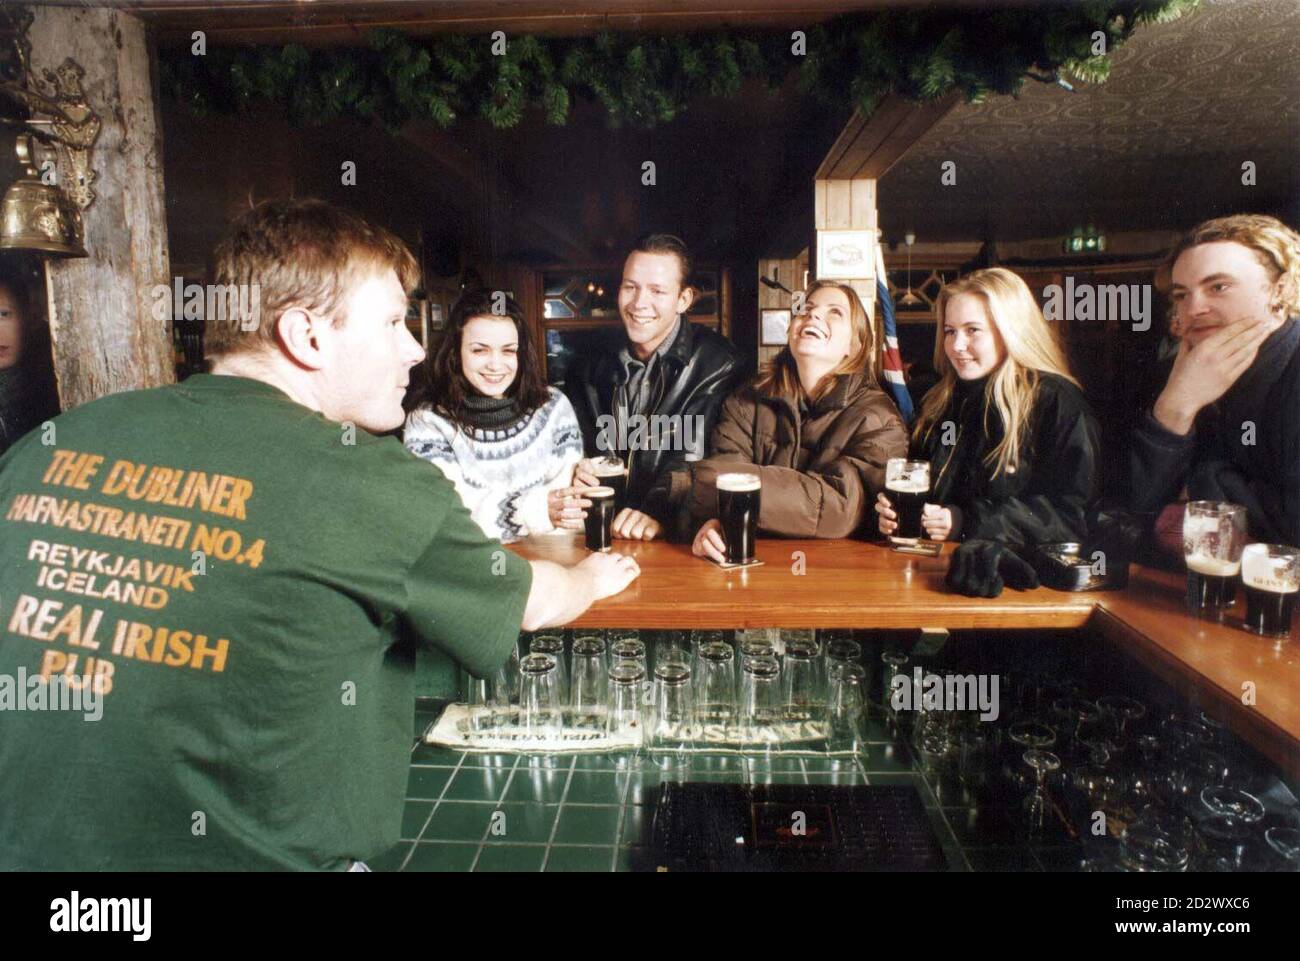 Die Isländer treffen sich an der Bar, um ihre Guinness-Pints zu genießen, während die Weihnachtsstimmung der Insel in diesem Jahr einen typisch irischen Geschmack annimmt. Die Einwohner von Reykjavik genießen in nur zwei Wochen 10,000 Pints des berühmten schwarzen Stout. Seit der Eröffnung ist die Stadt der erste Irish-Stil Pub "The Dubliner". SEHEN SIE SICH DIE PA-GESCHICHTE AN. Stockfoto